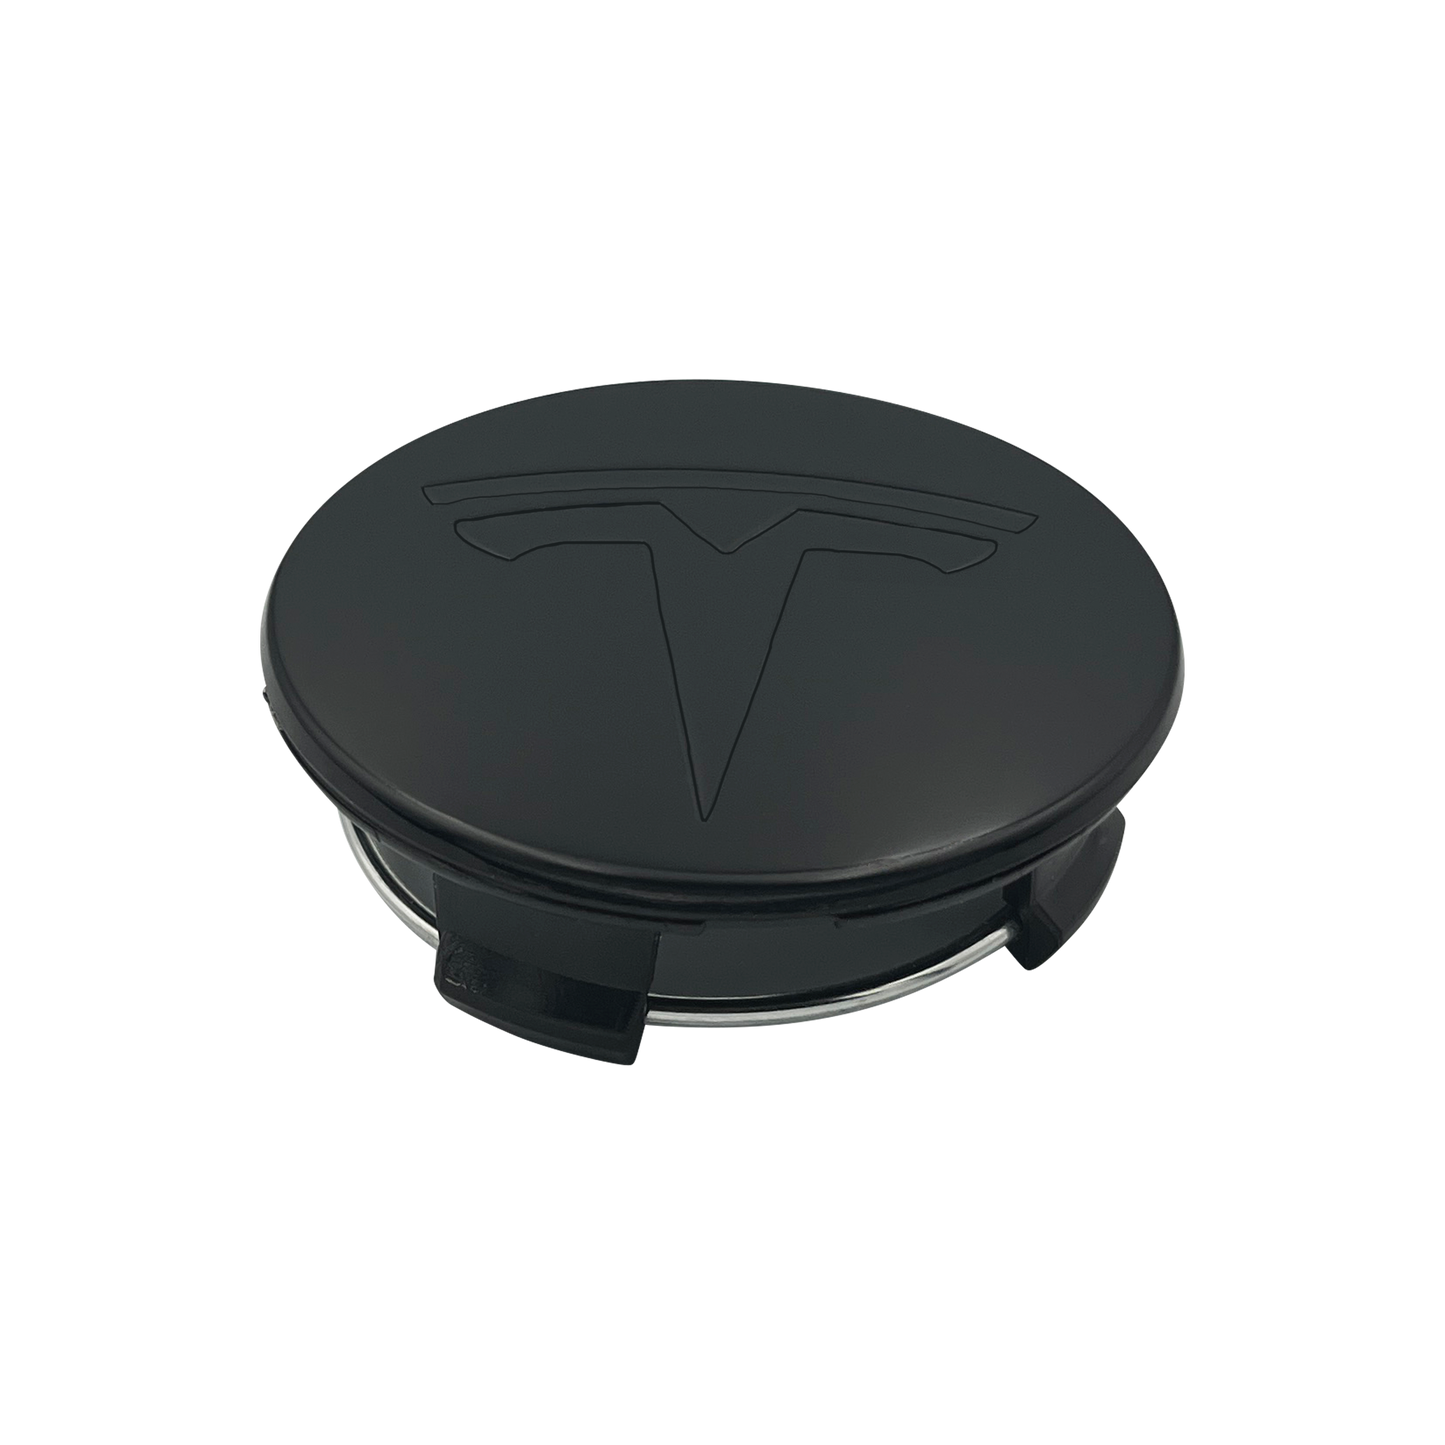 4 pieces. Black Tesla Center Caps 57mm 